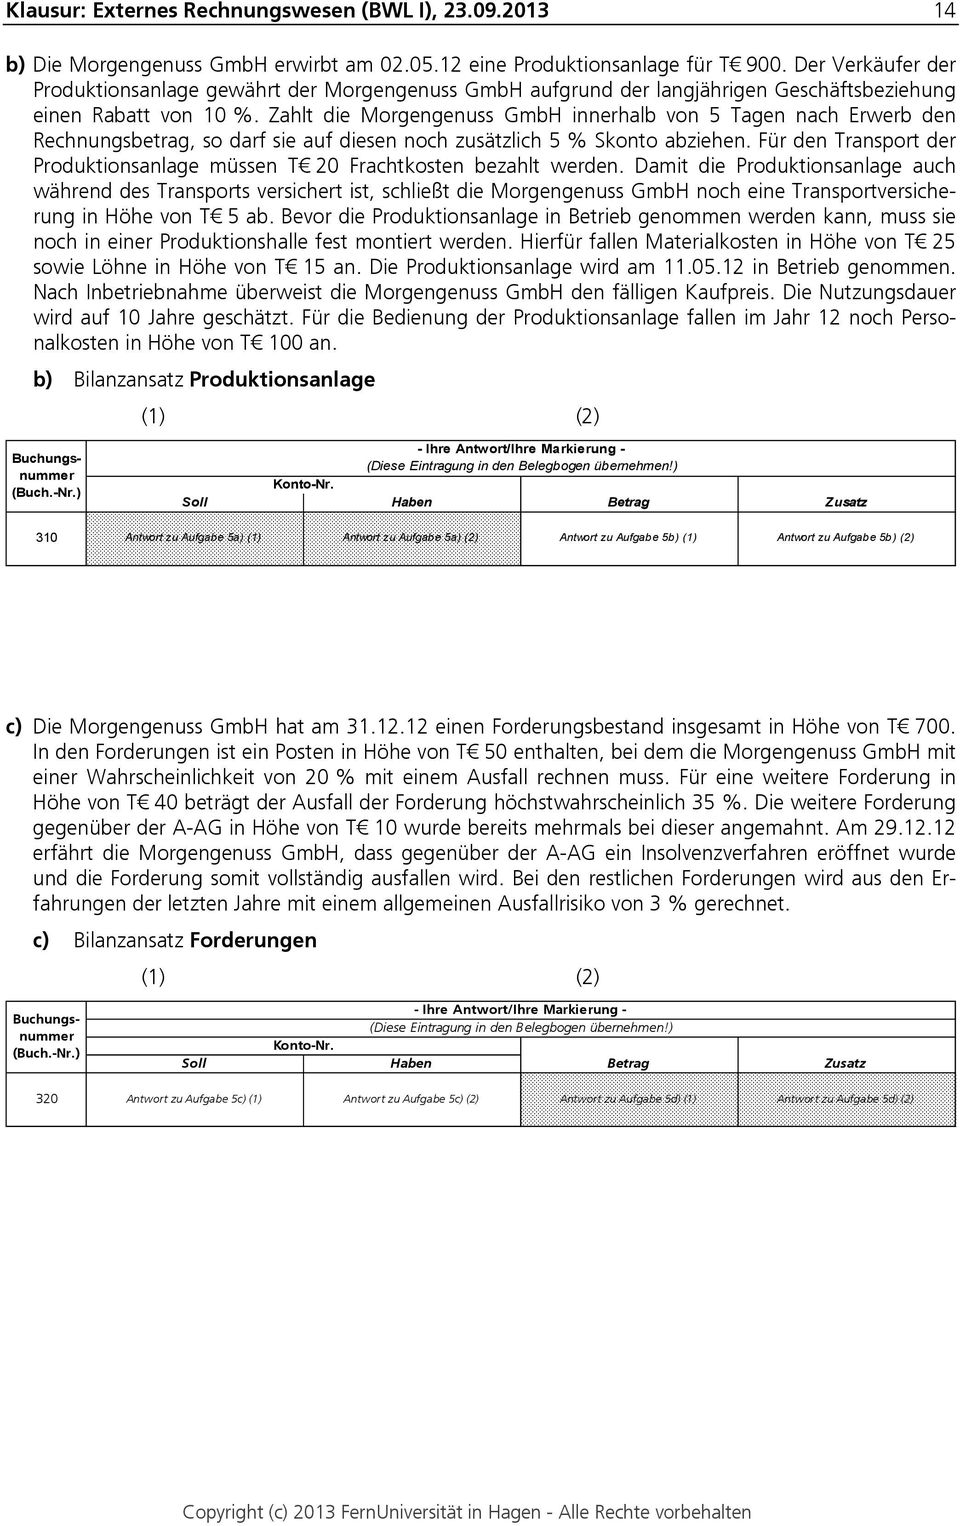 Zahlt die Morgengenuss GmbH innerhalb von 5 Tagen nach Erwerb den Rechnungsbetrag, so darf sie auf diesen noch zusätzlich 5 % Skonto abziehen.